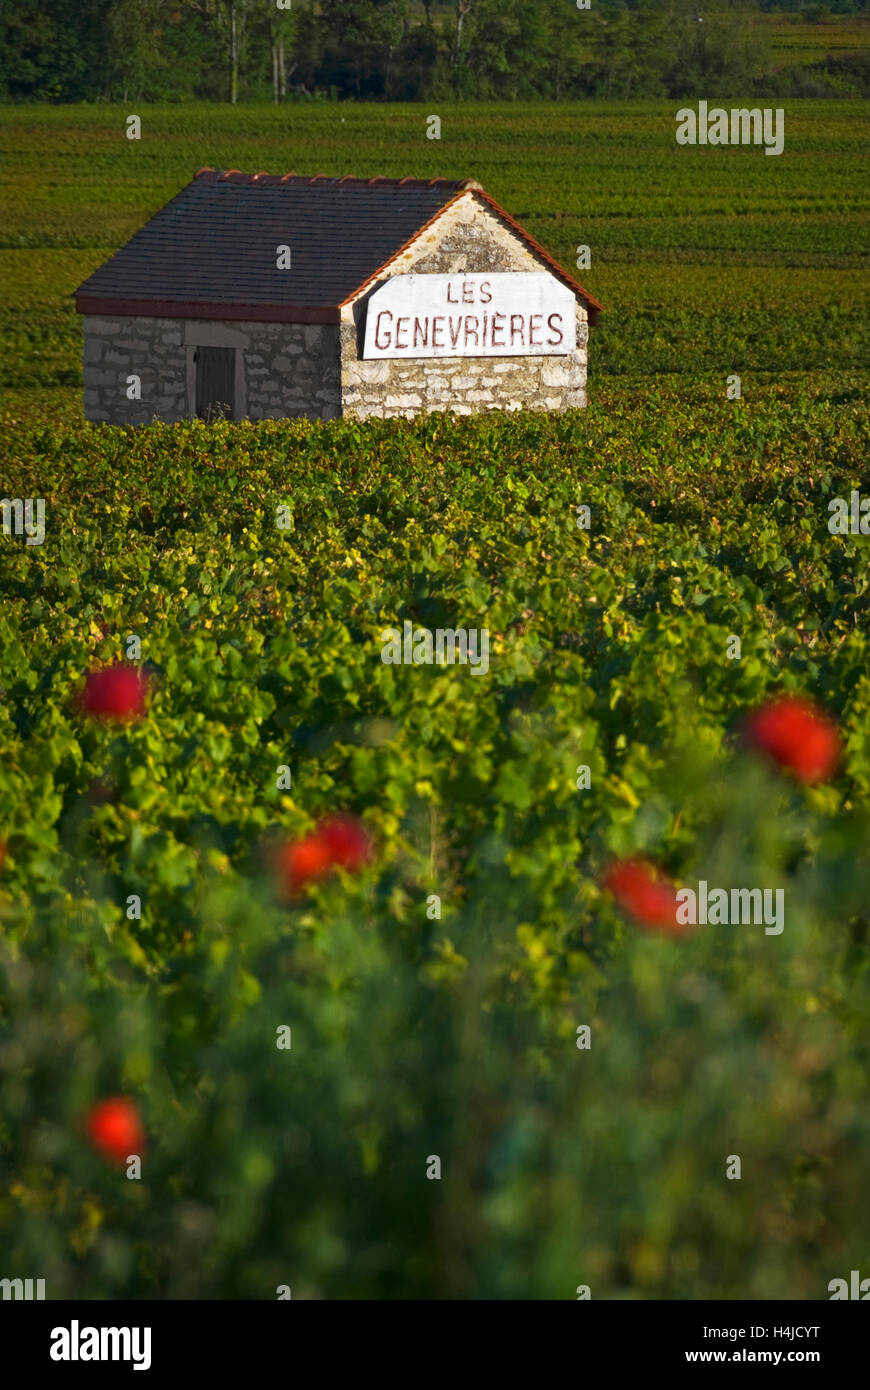 Pierre vendangeurs refuge dans les Genevrières vineyard coquelicots en premier plan. Meursault, Bourgogne Côte d'Or, France. Banque D'Images